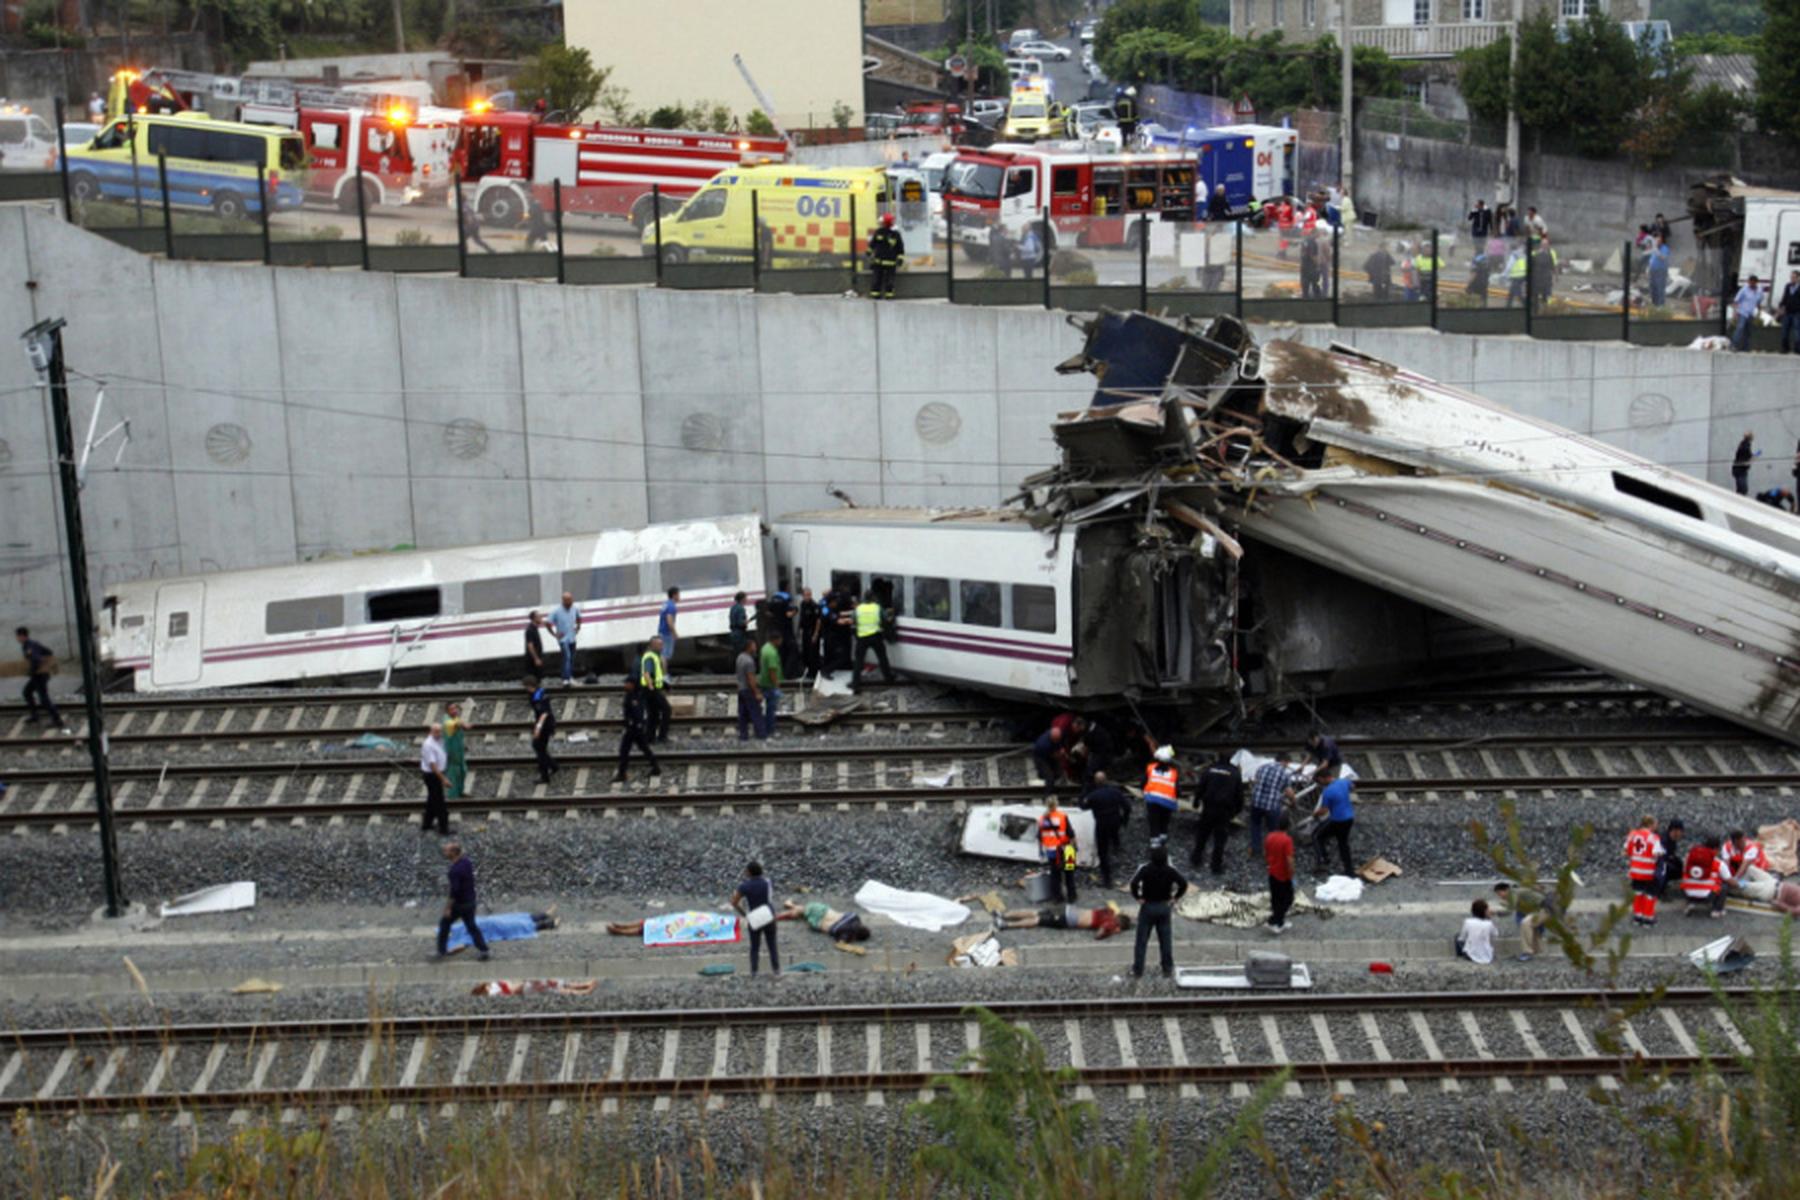 Santiago de Compostela: Haftstrafen elf Jahre nach Zugunfall mit 80 Toten in Spanien